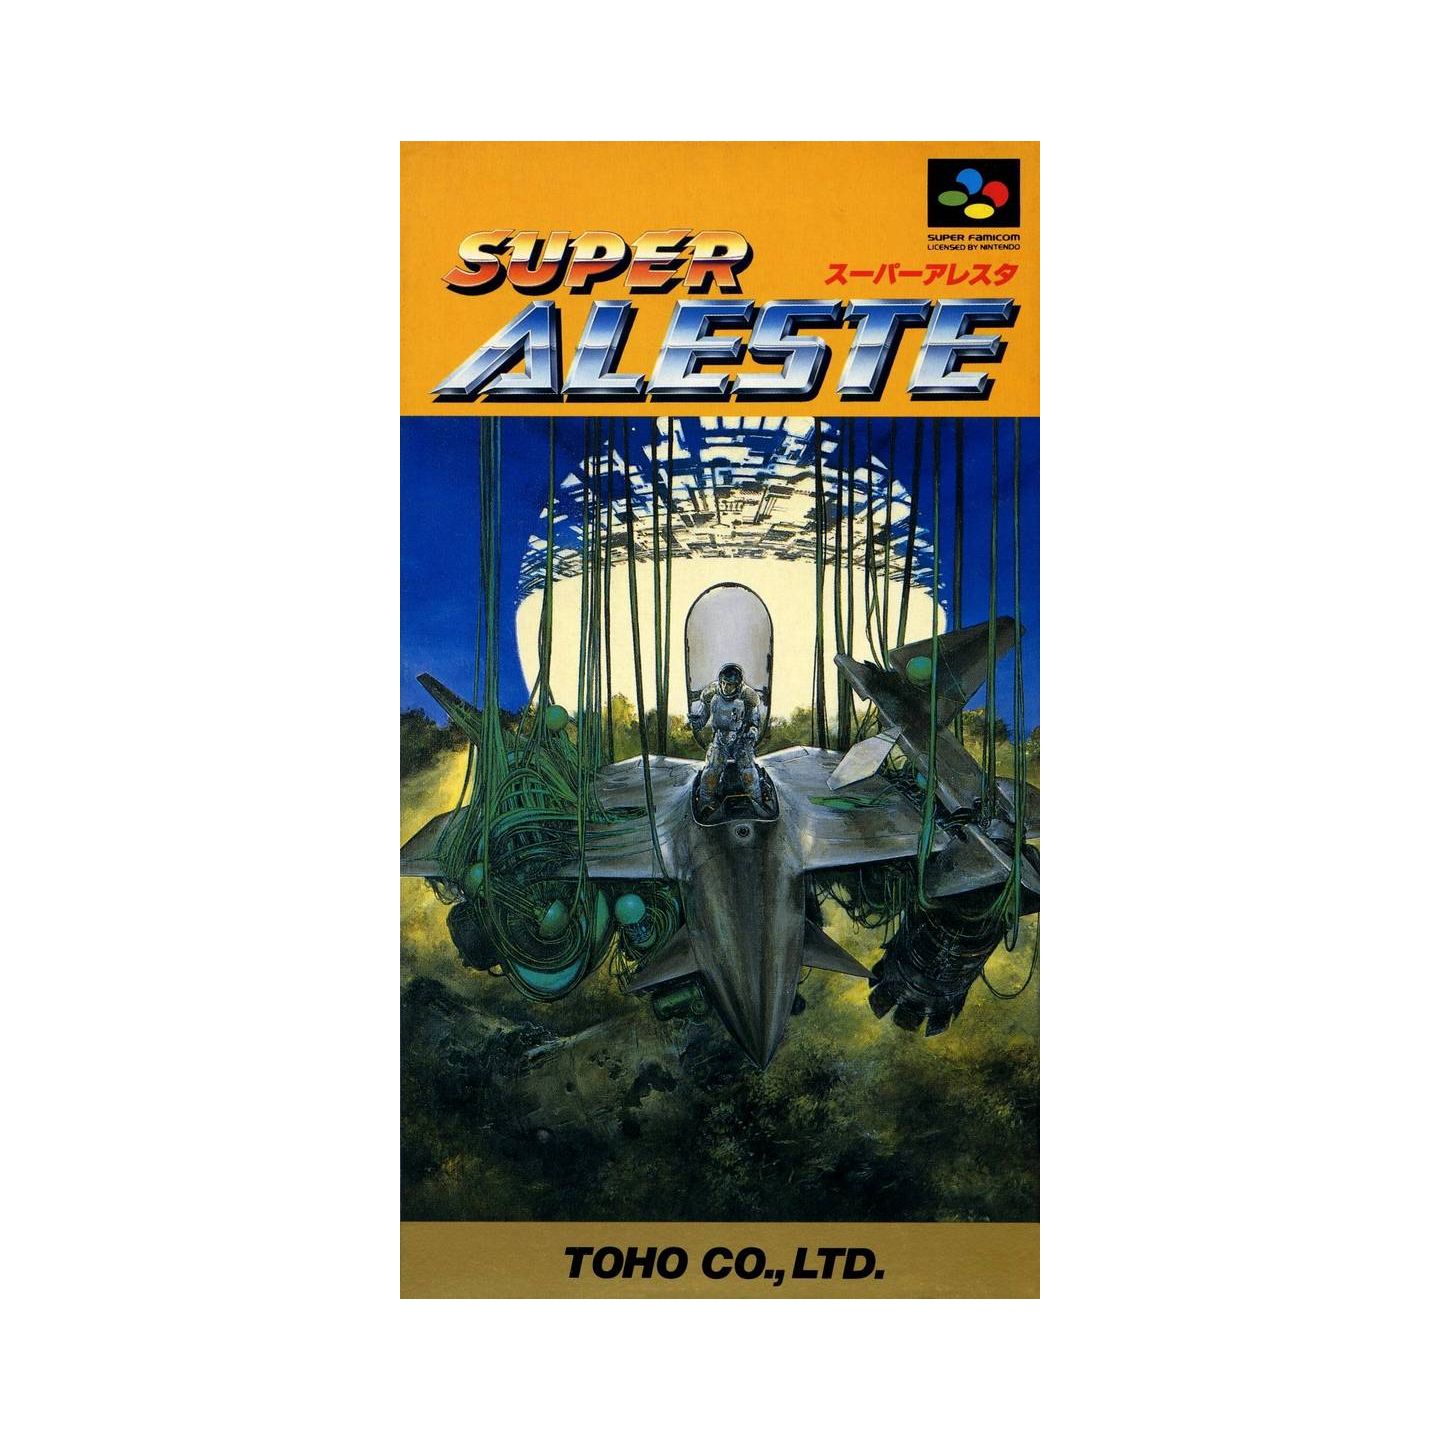 最新エルメス スーパーファミコンソフト SUPER ALESTE(スーパー